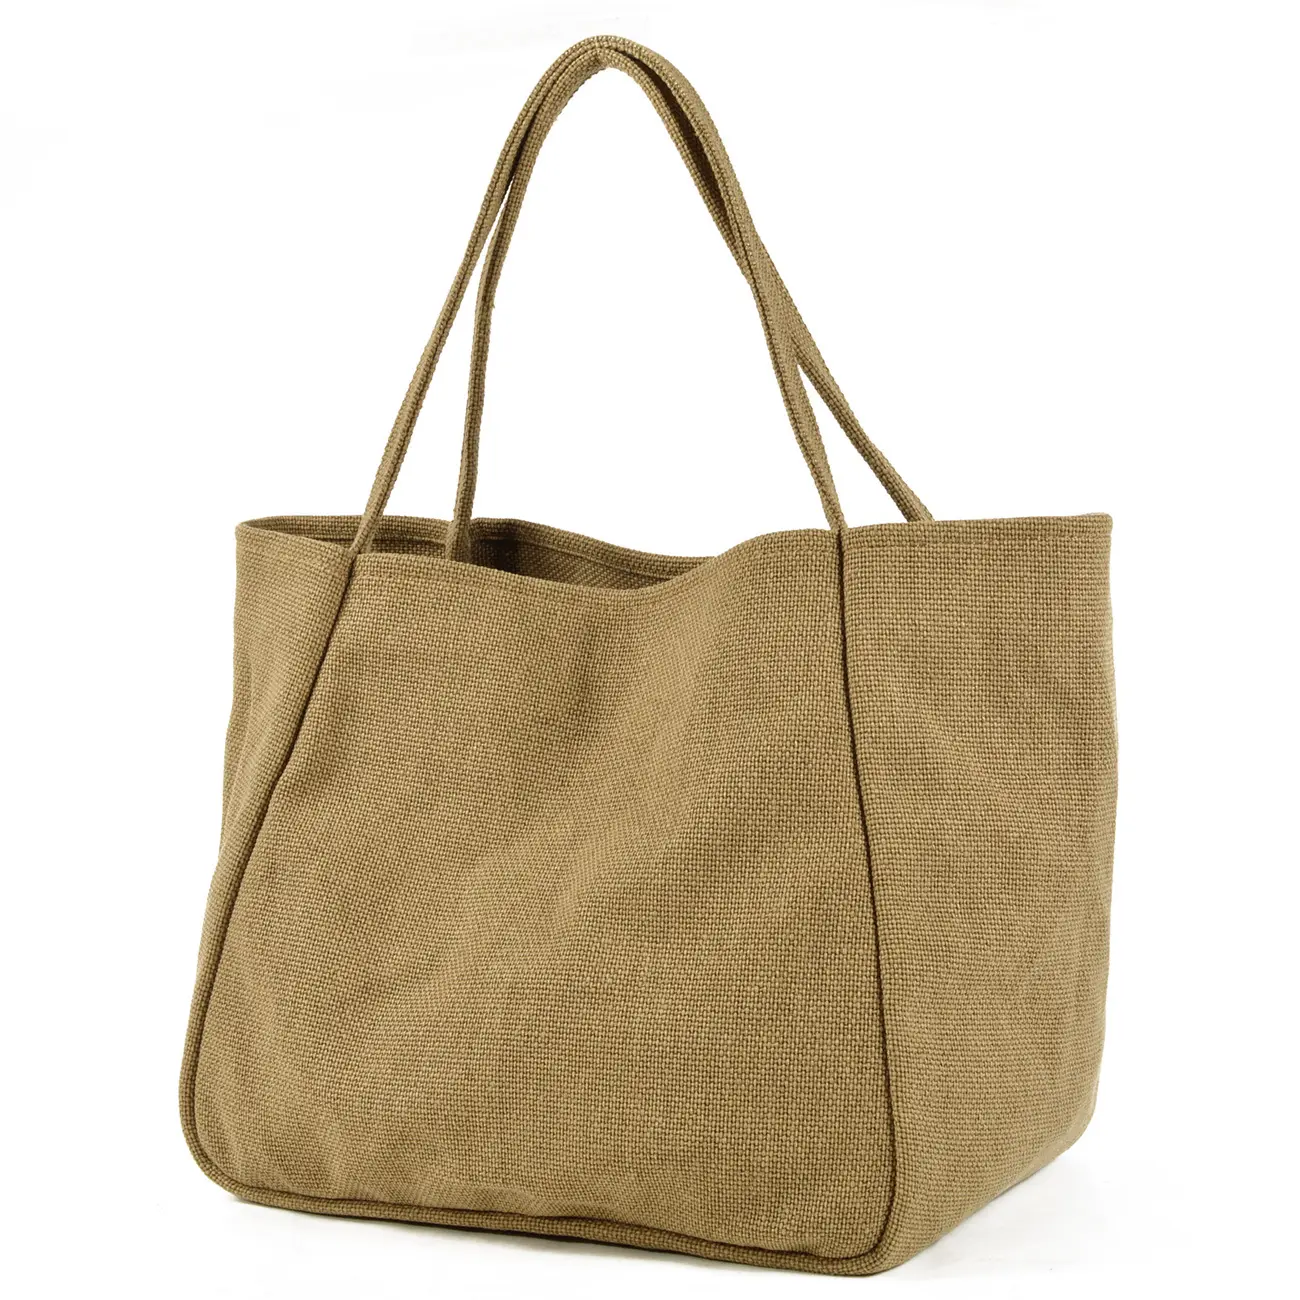 Benutzer definierte Sac kleinen Jute Einkaufstaschen Handtaschen Schulter Baumwolle Leinen Einkaufstasche Einkaufstasche Frauen Handtaschen mit Stickerei